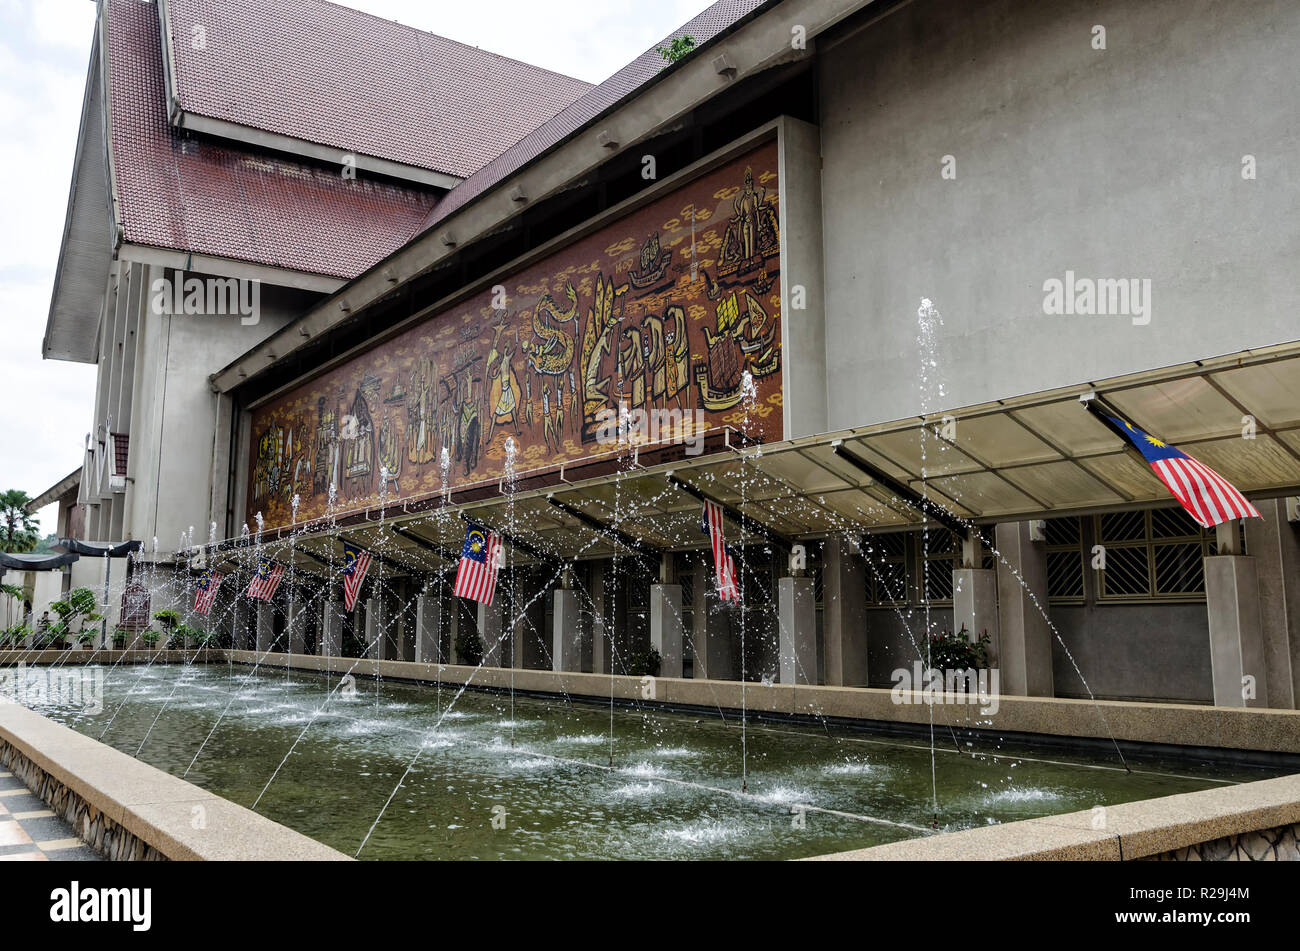 National Museum, Kuala Lumpur, Malaysia. - Anzeigen der Malaysischen National Museum (muzium Negara) in Jalan Damansara in Kuala Lumpur, Malaysia. Stockfoto